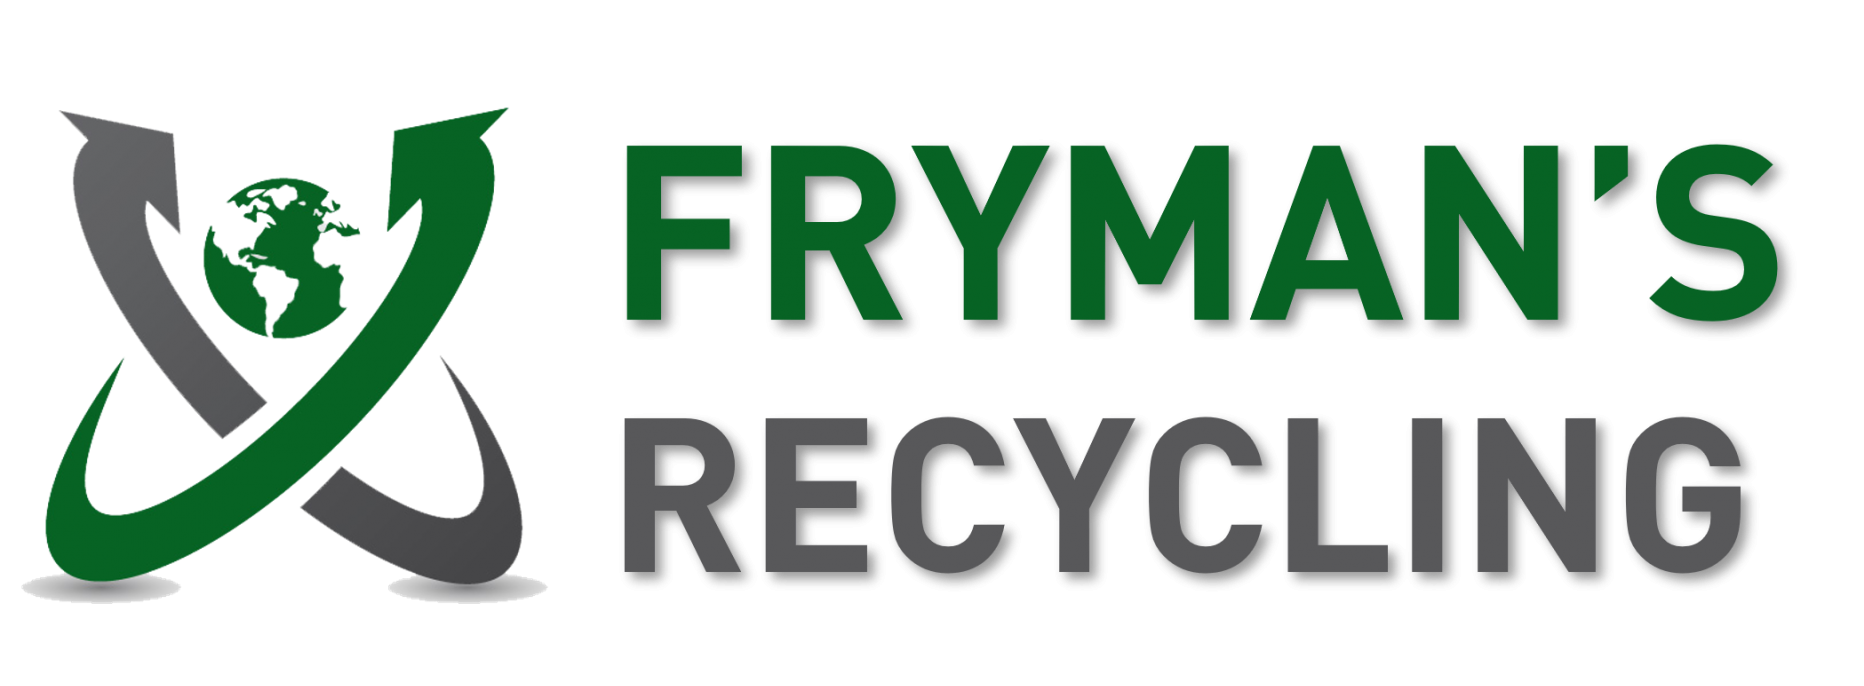 frymans recycling